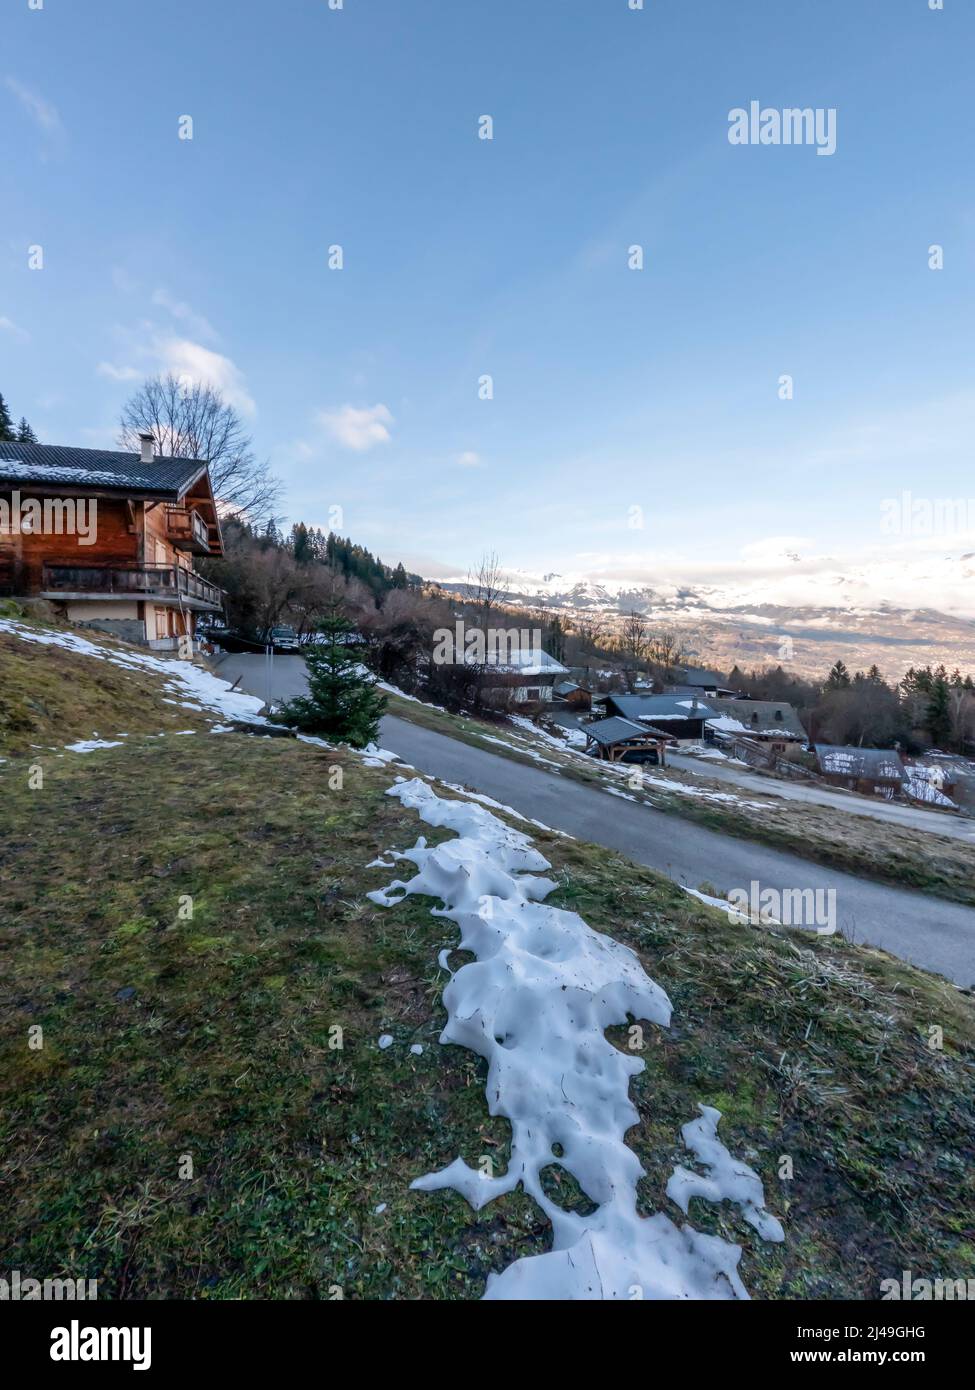 Chalet en bois typique en hiver avec montagnes et ciel bleu, dans les Alpes françaises, France, Europe Banque D'Images